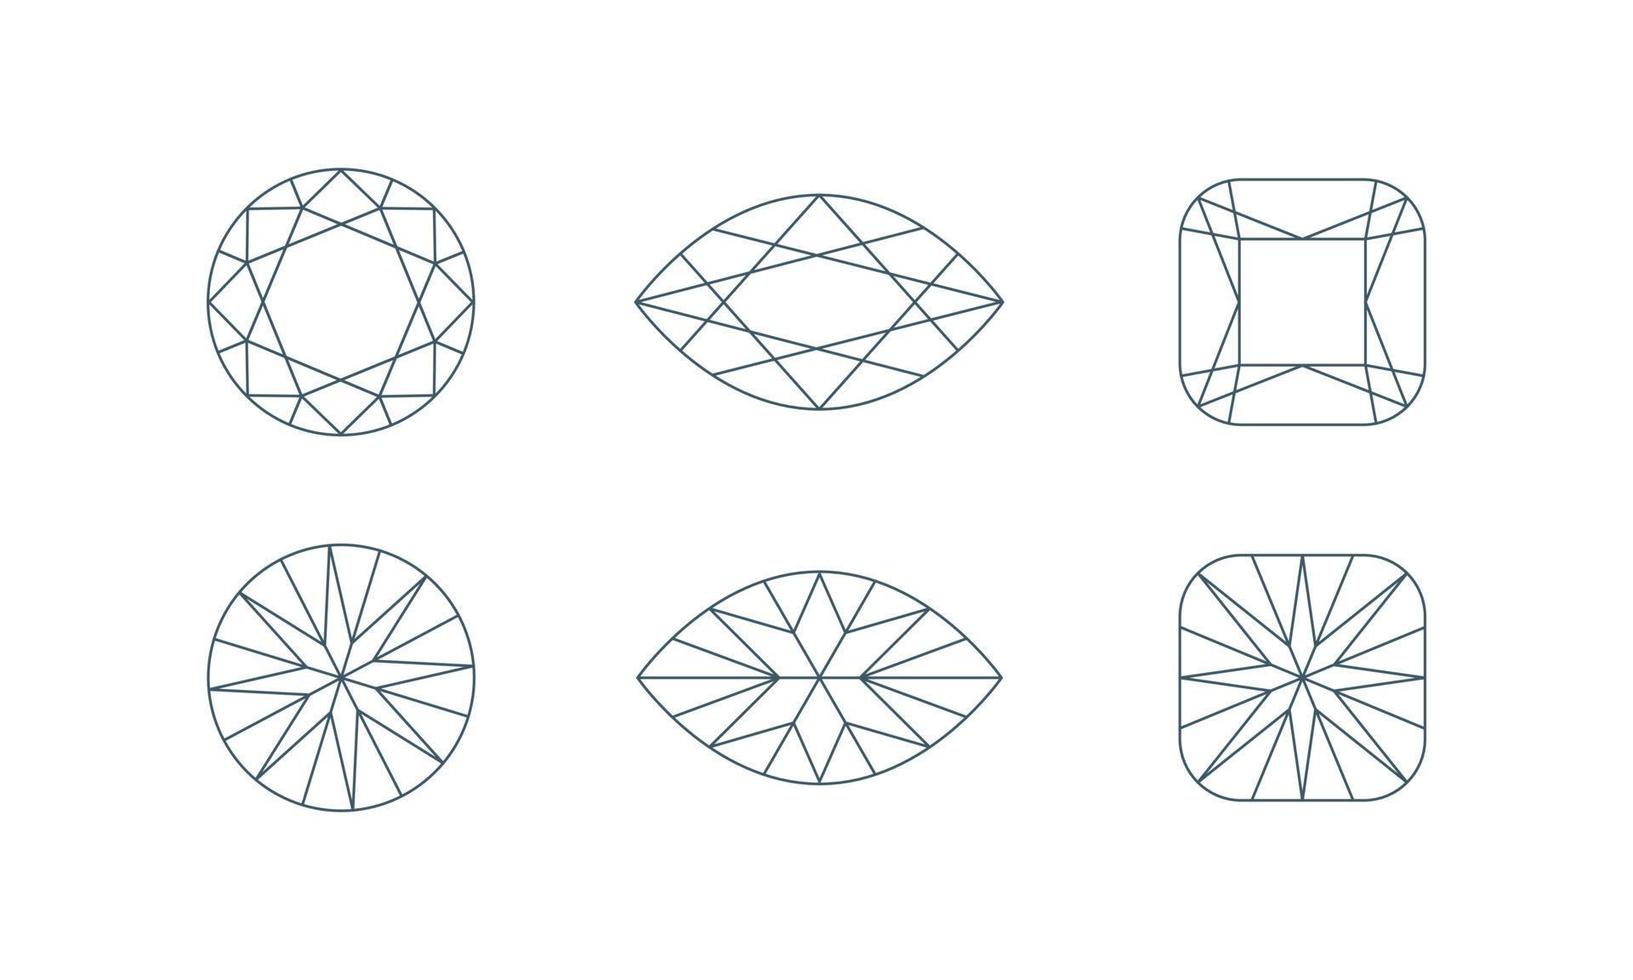 formas de cristal de diamante. vista frontal y posterior. conjunto de iconos de línea de joyería. ilustración vectorial vector